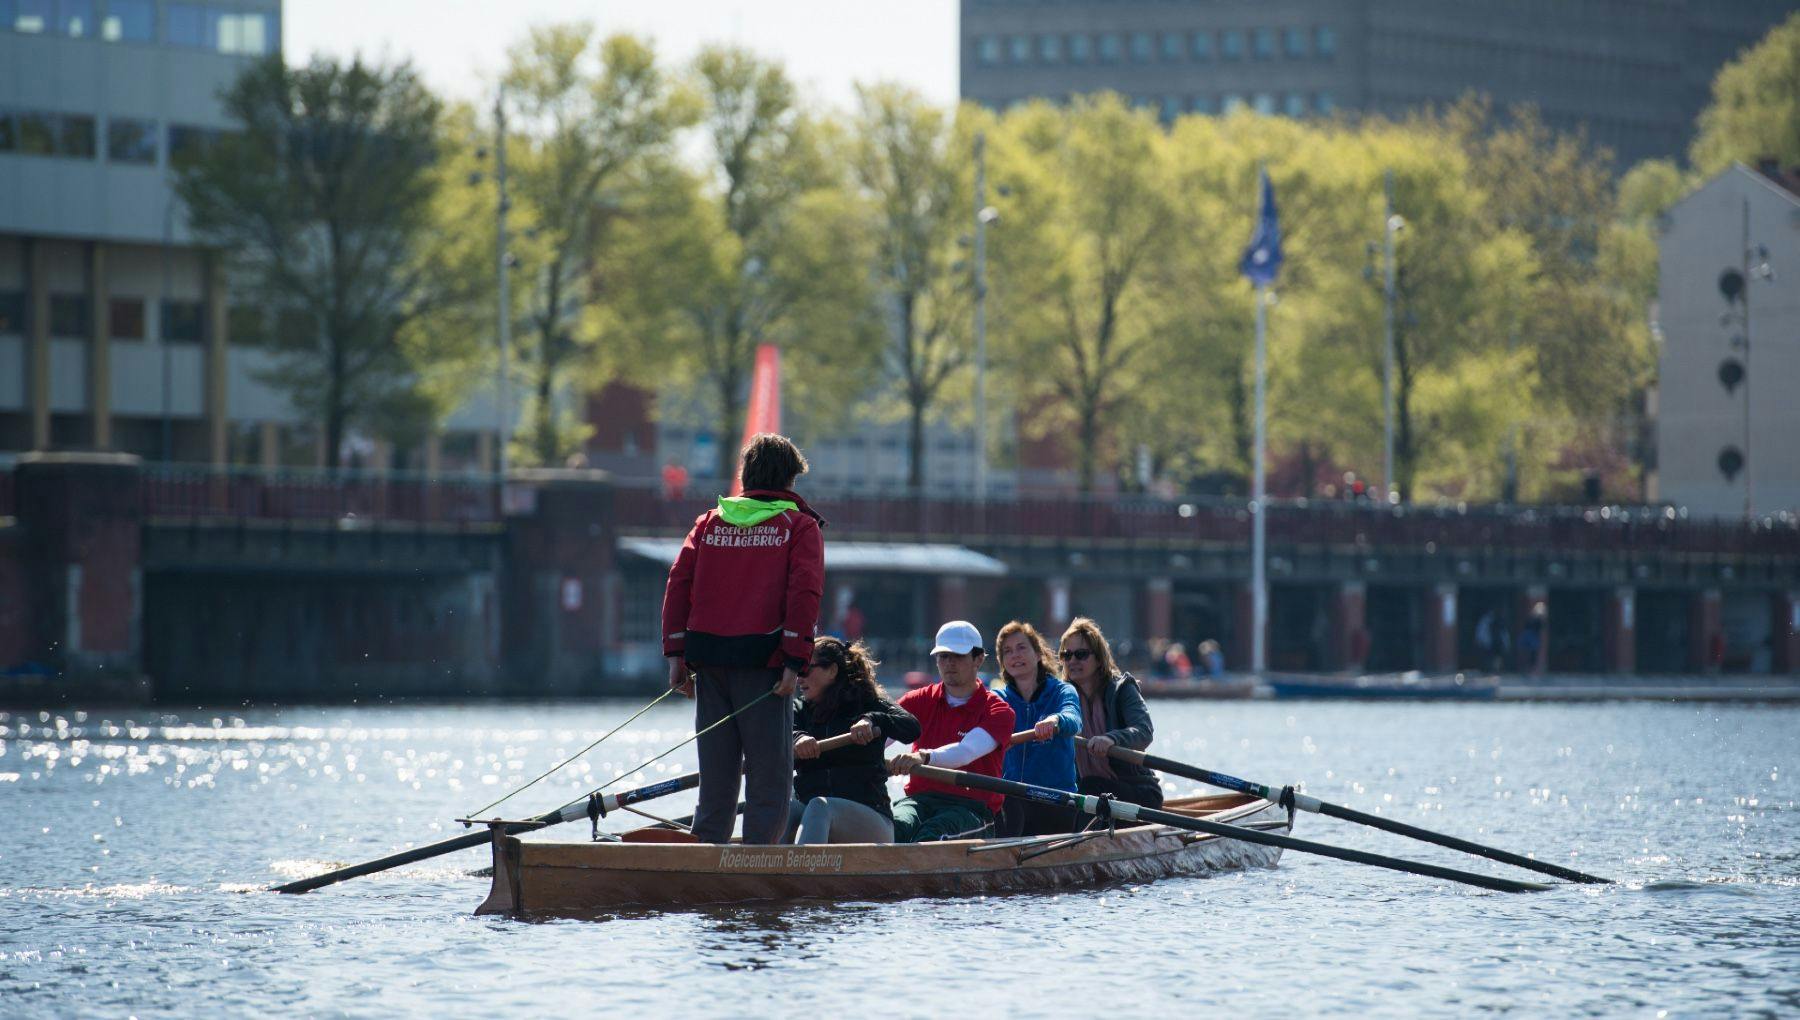 Roeivereniging Berlagebrug people rowing on the Amstel river